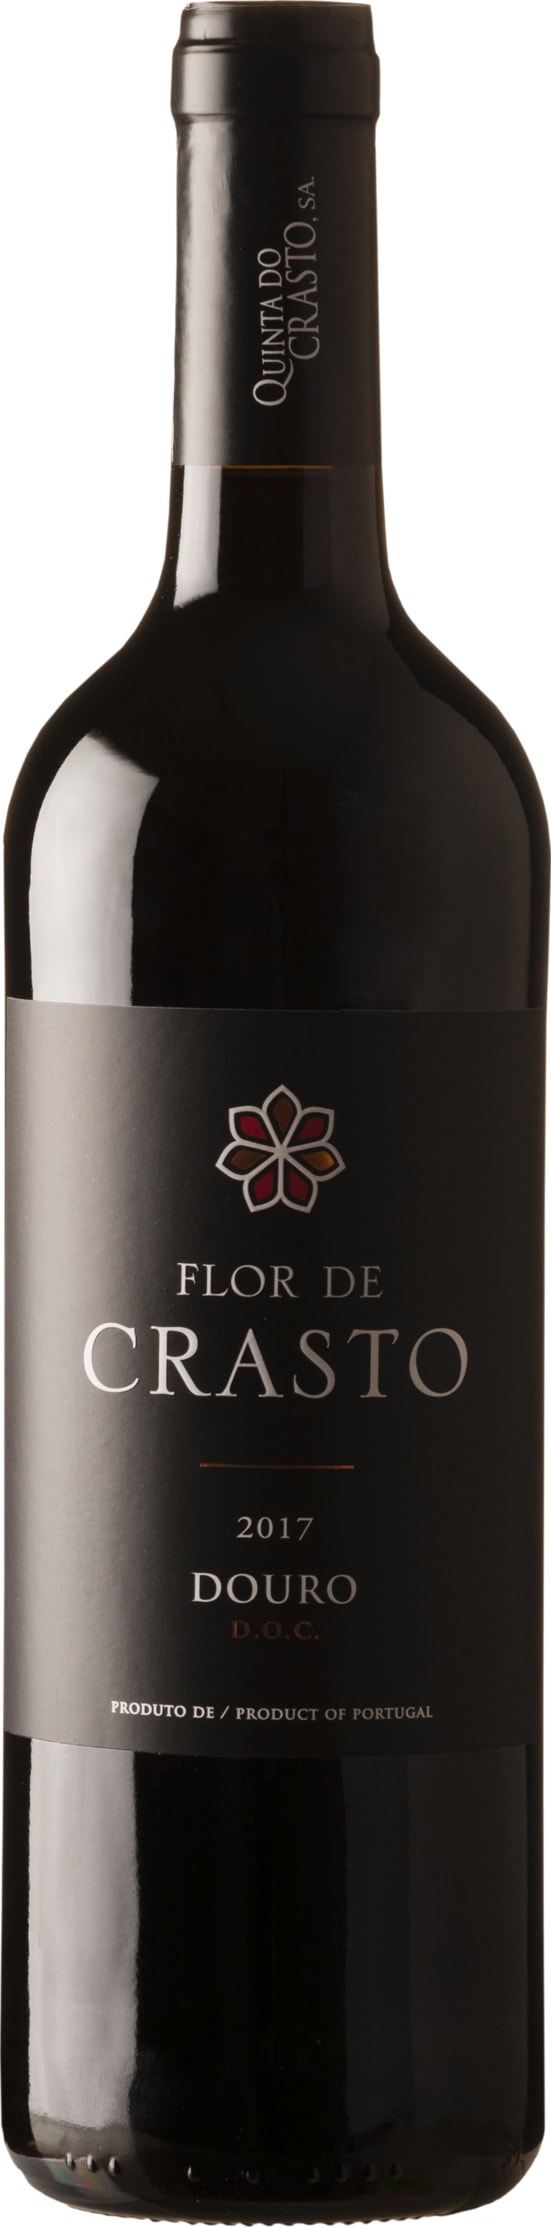 Quinta Do Crasto Flor de Crasto Red 2021 75cl - Buy Quinta Do Crasto Wines from GREAT WINES DIRECT wine shop